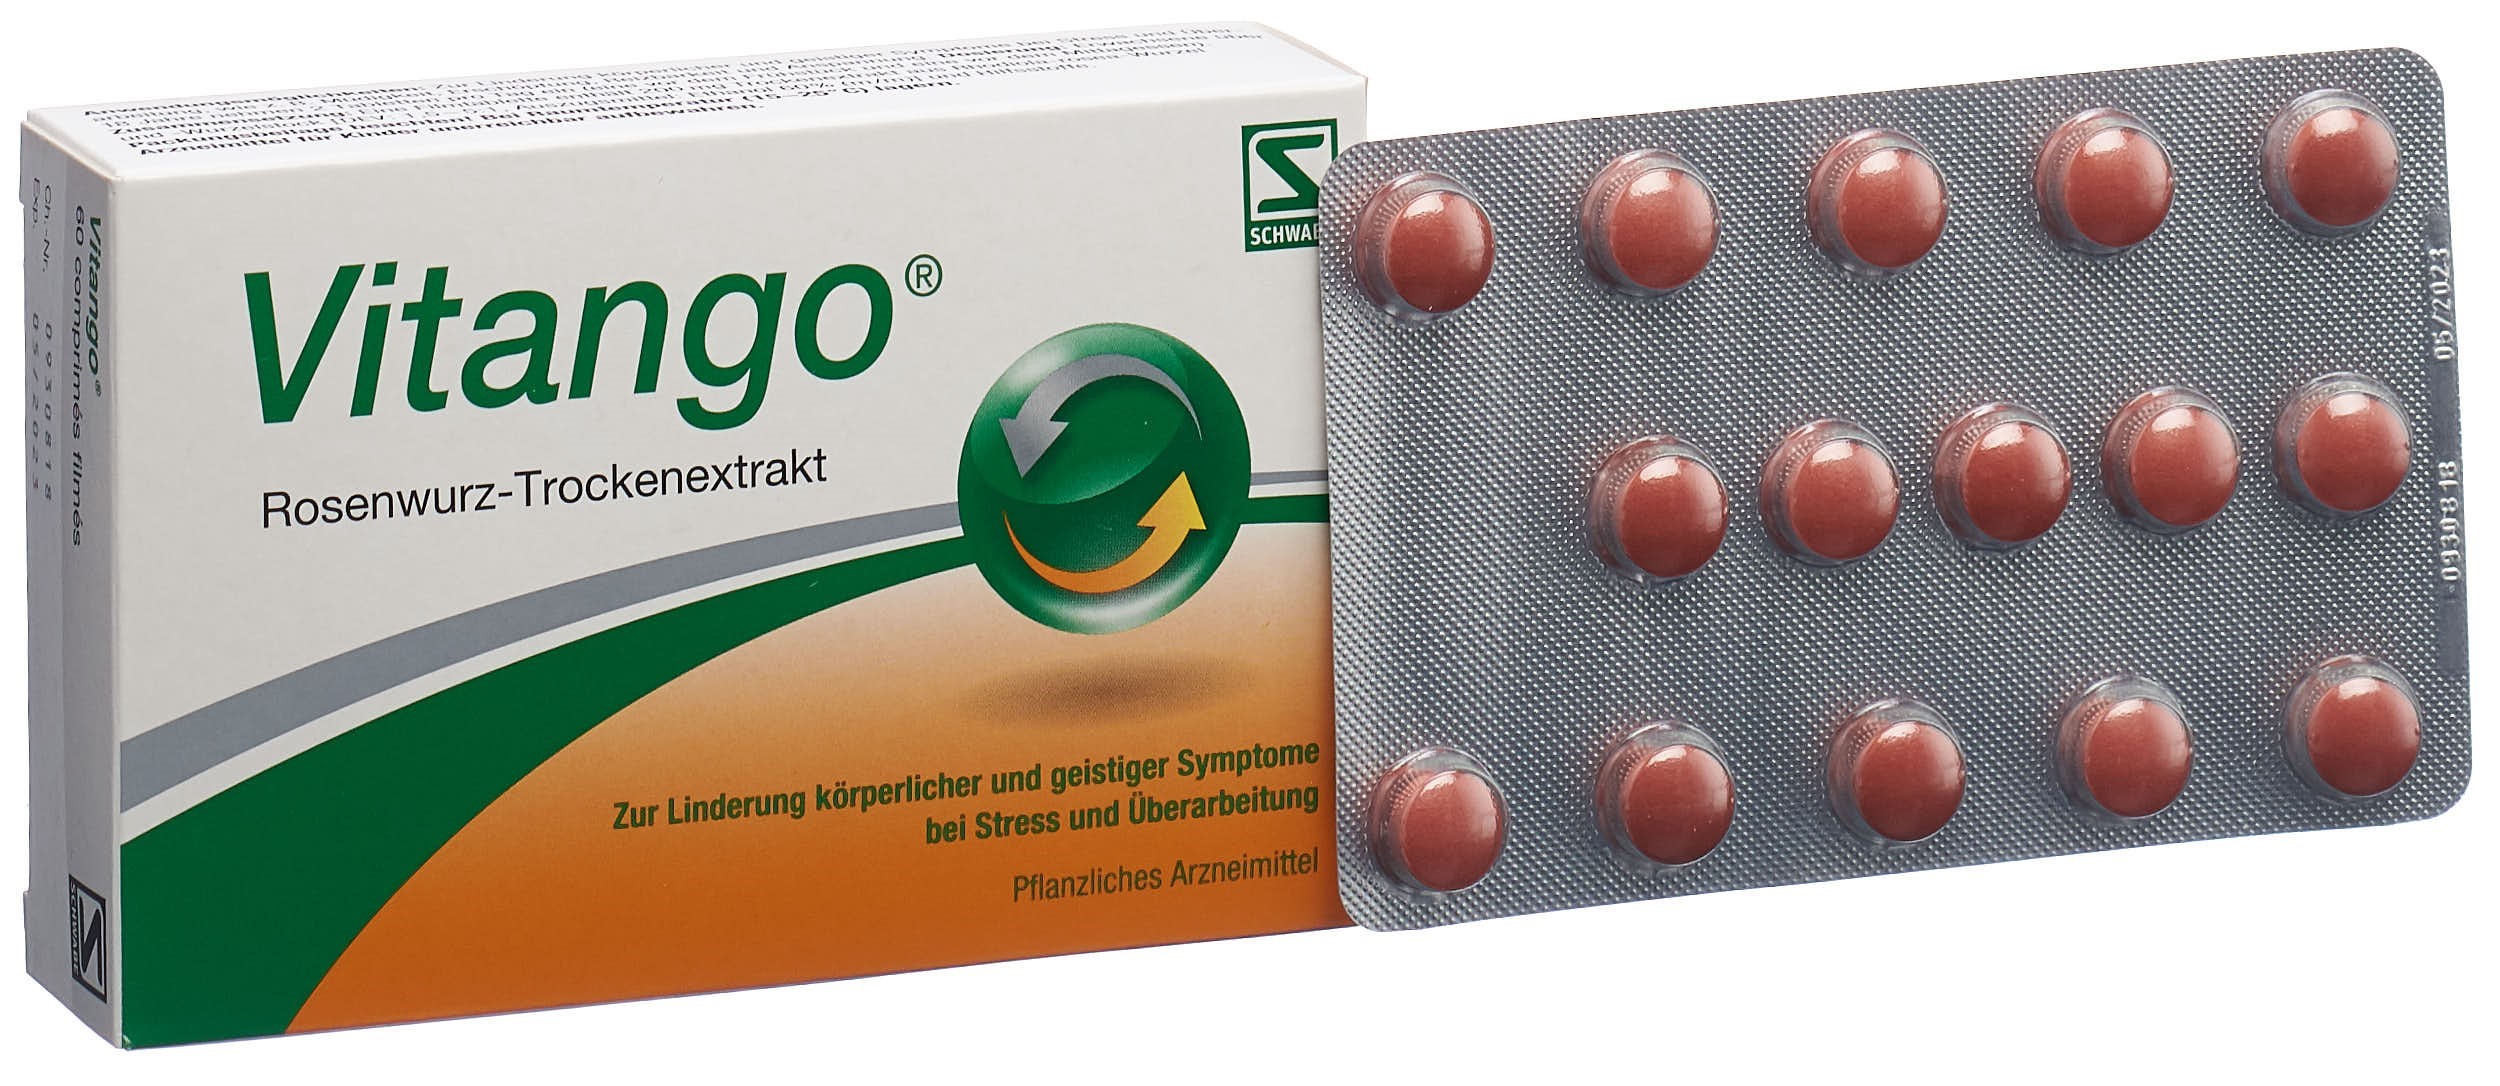 VITANGO Filmtabl 200 mg 60 Stk